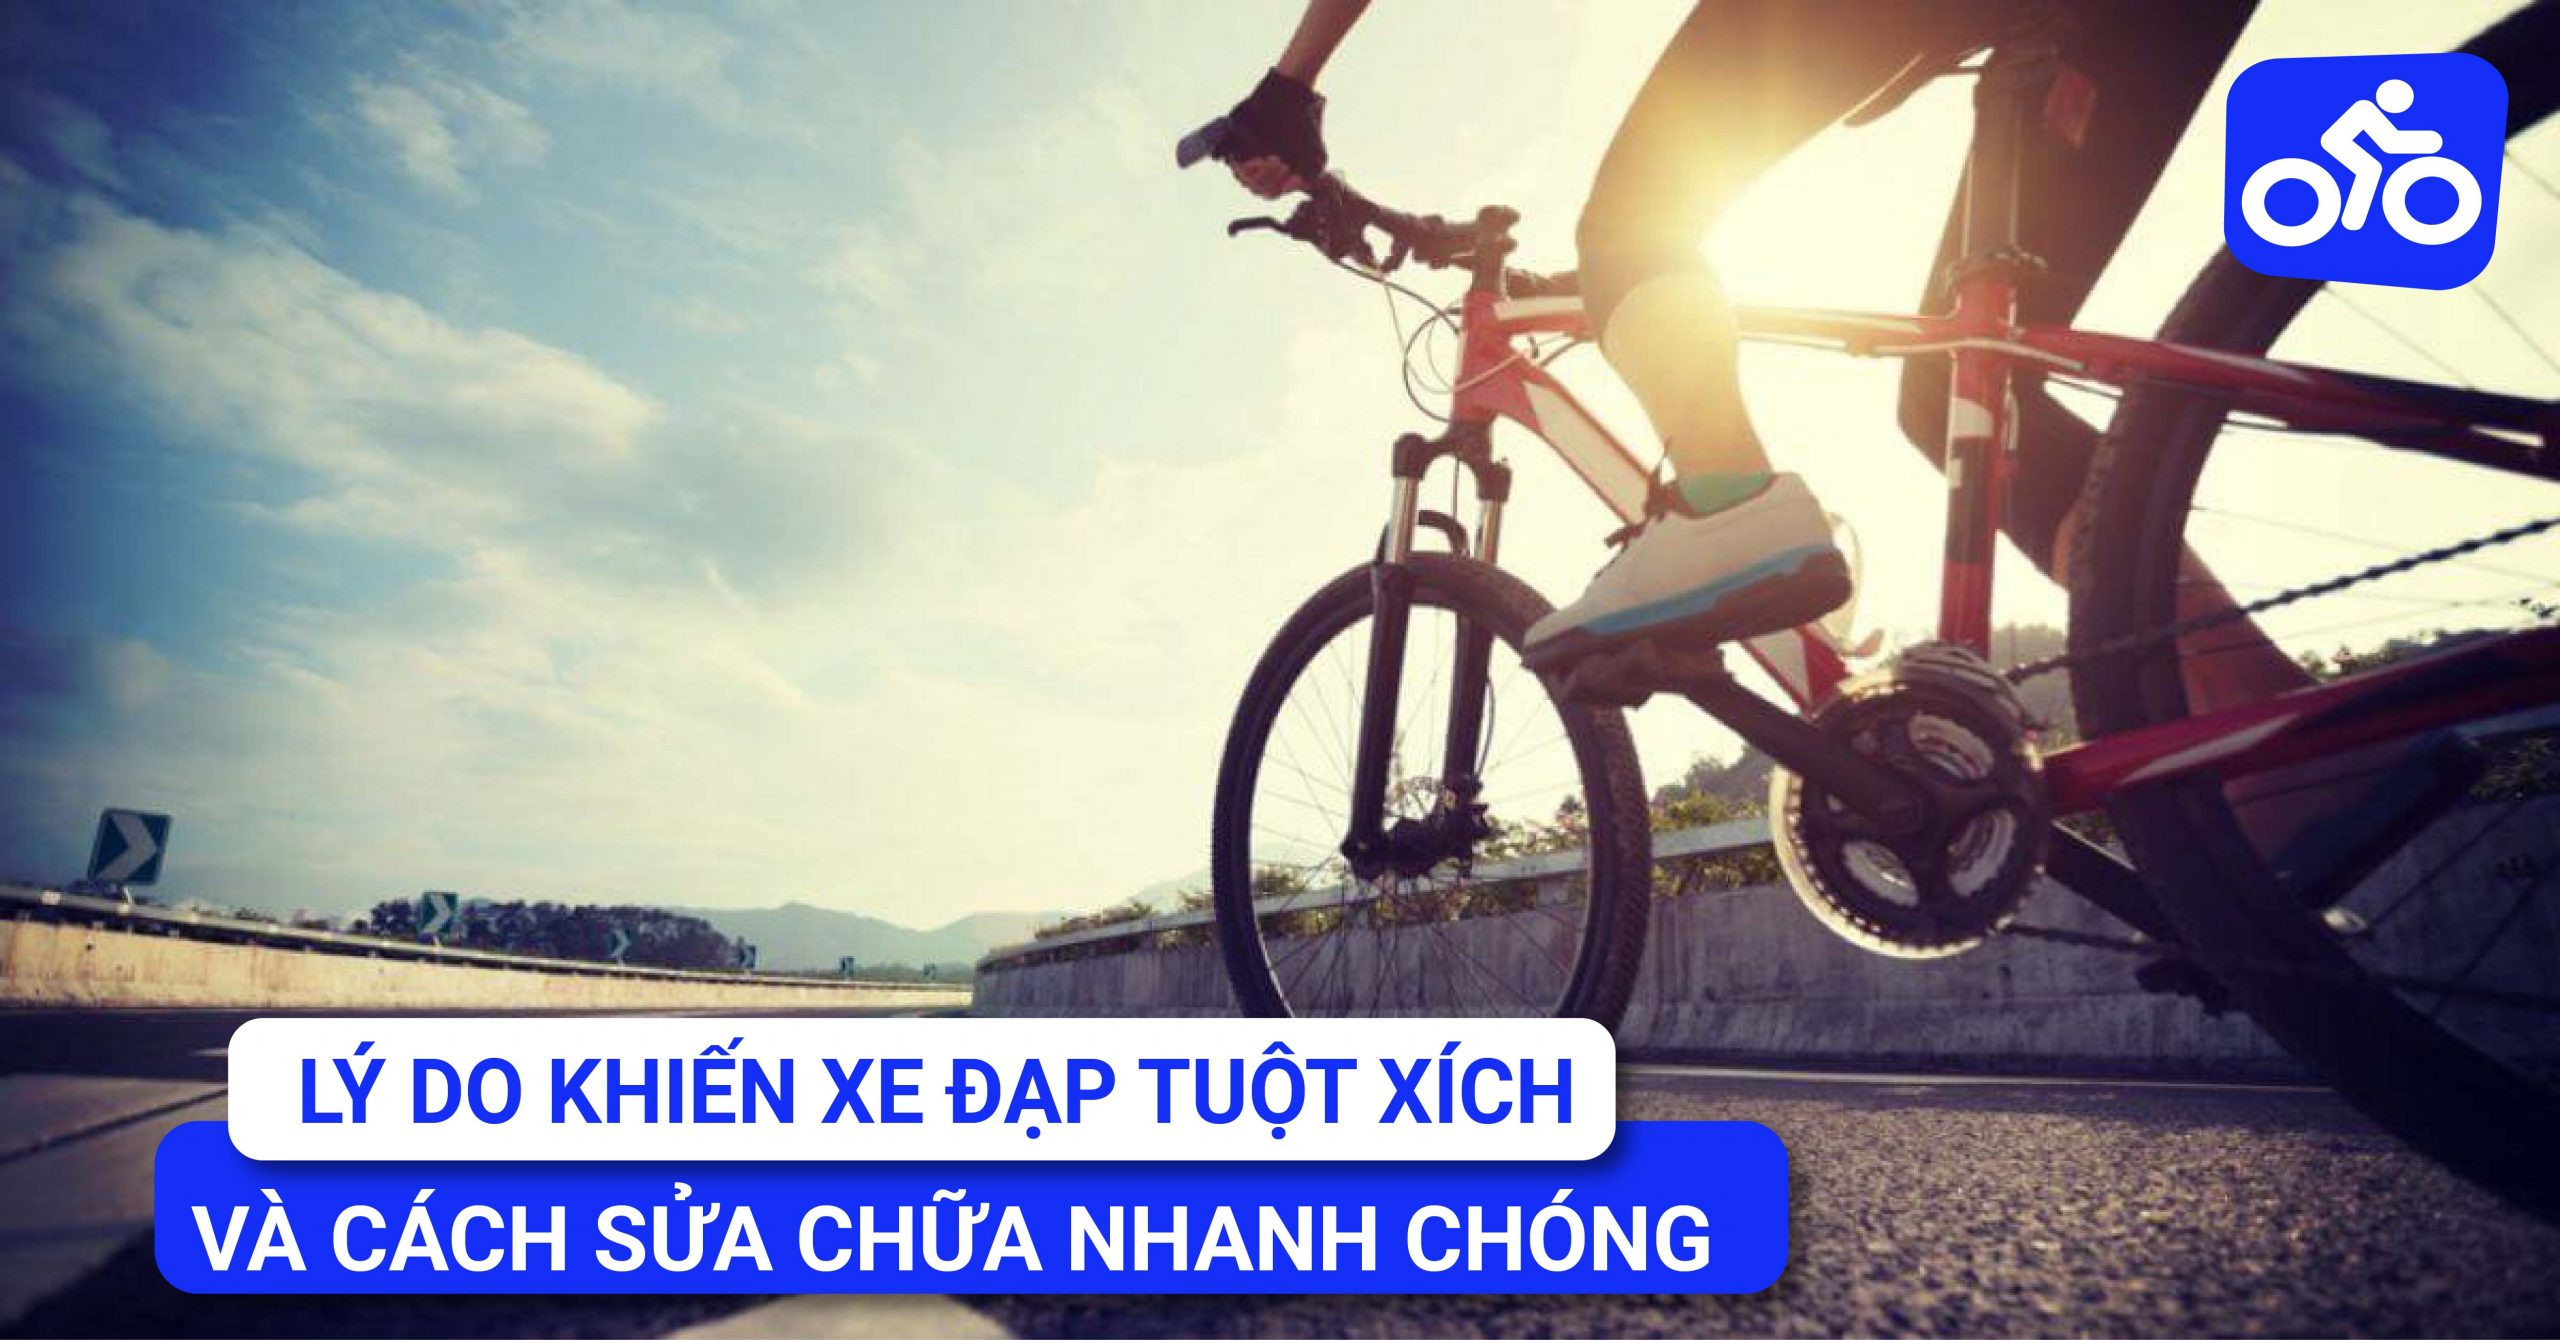 MÁCH BẠN TỪNG BƯỚC LÀM SẠCH HỆ THỐNG TRUYỀN ĐỘNG XE ĐẠP  Xe đạp Giant  International  NPP độc quyền thương hiệu Xe đạp Giant Quốc tế tại Việt Nam